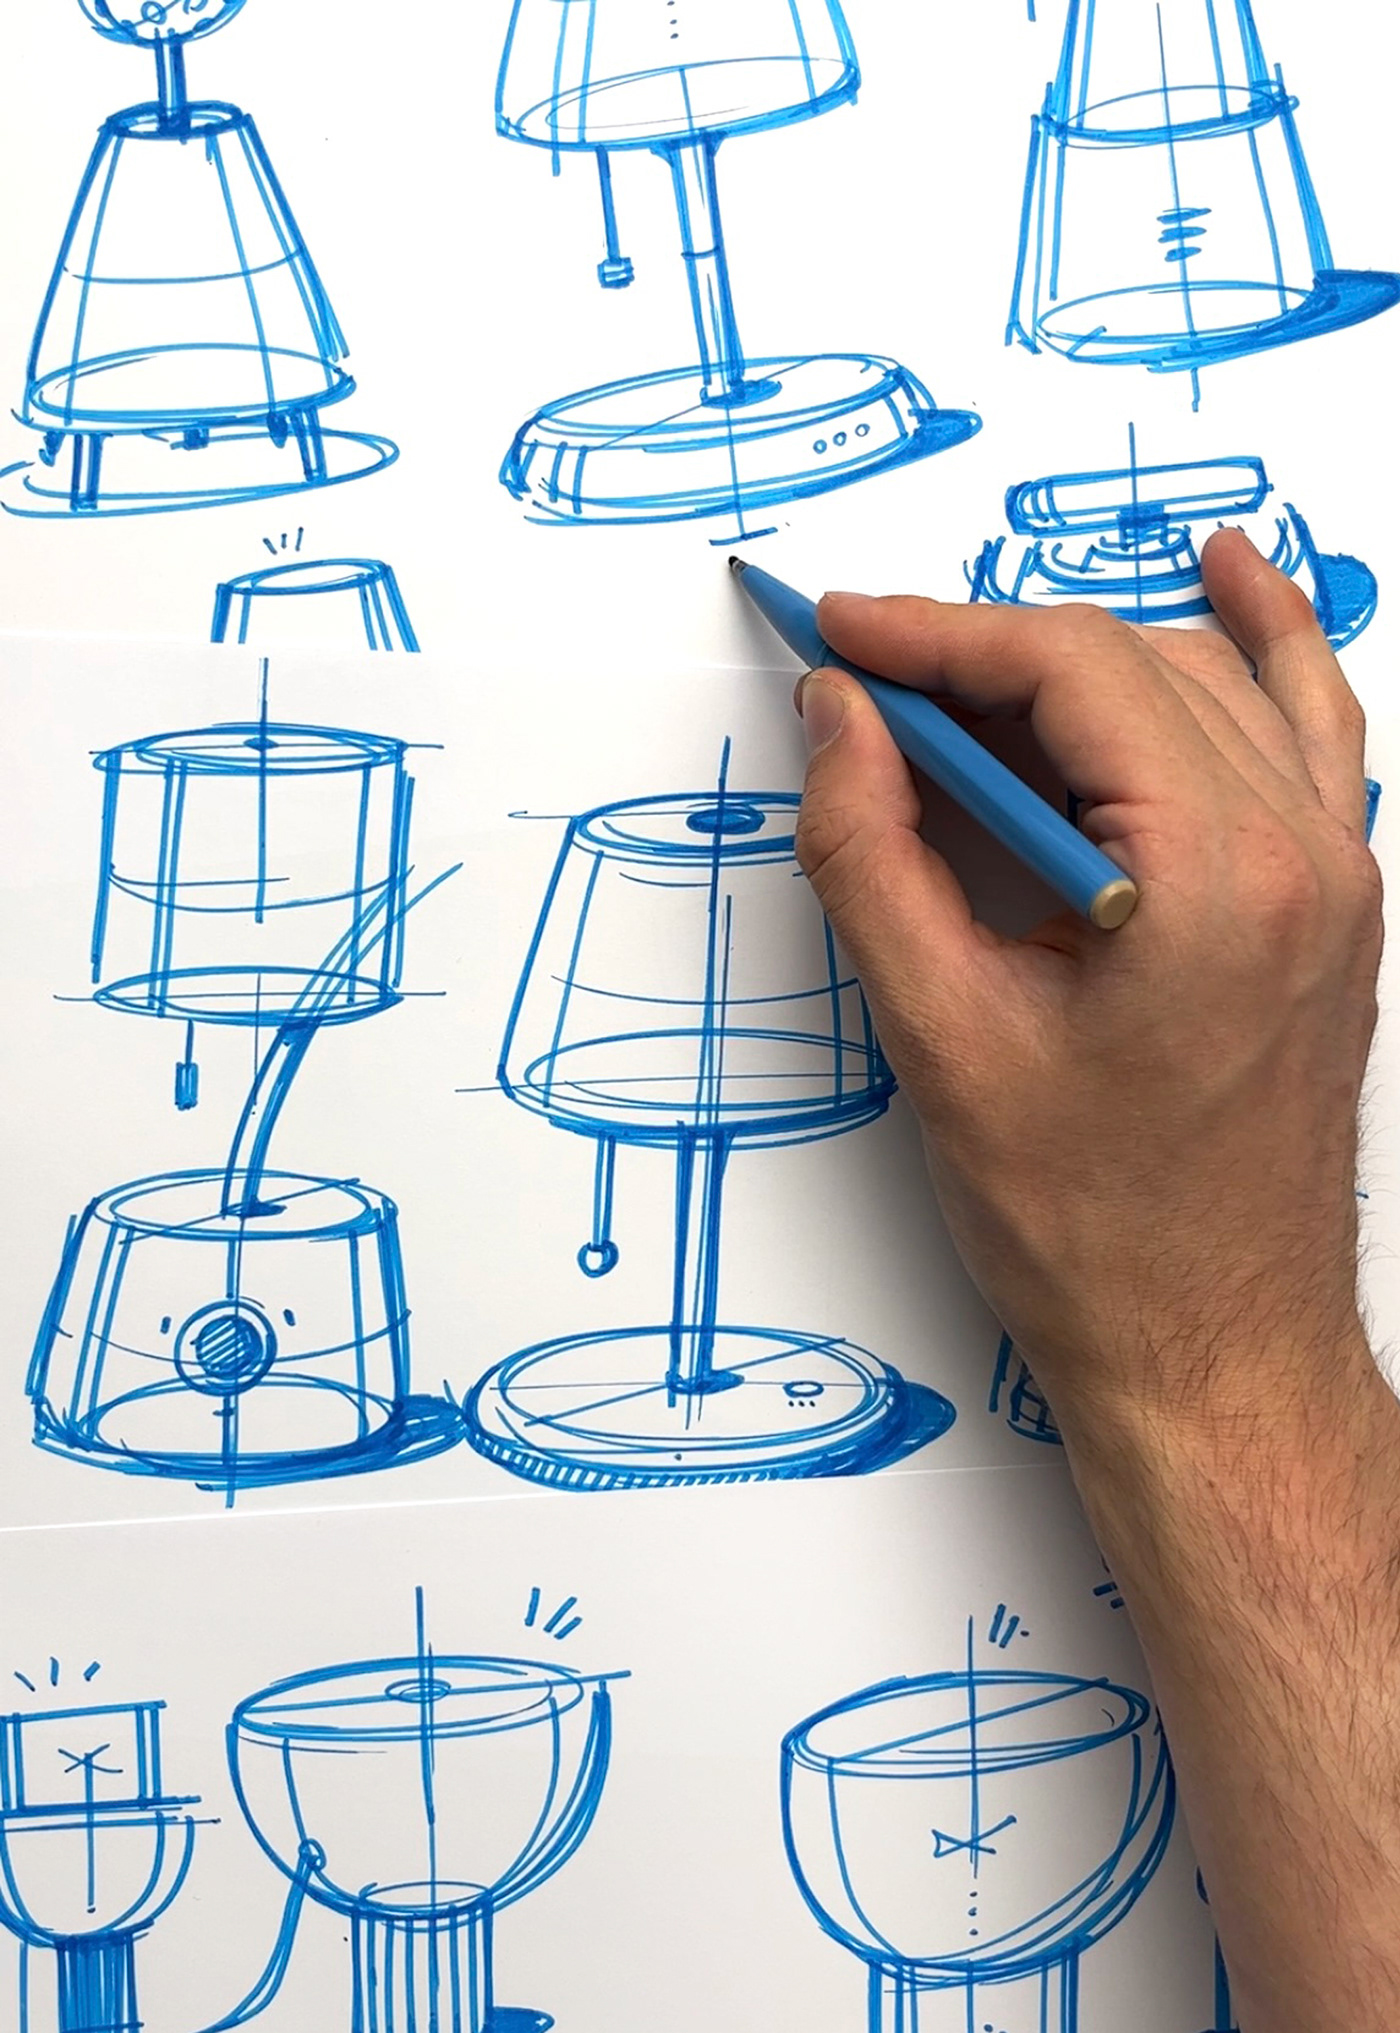 Drawing  concept art sketch artist artwork productdesign skizze sketchbook pencil ink